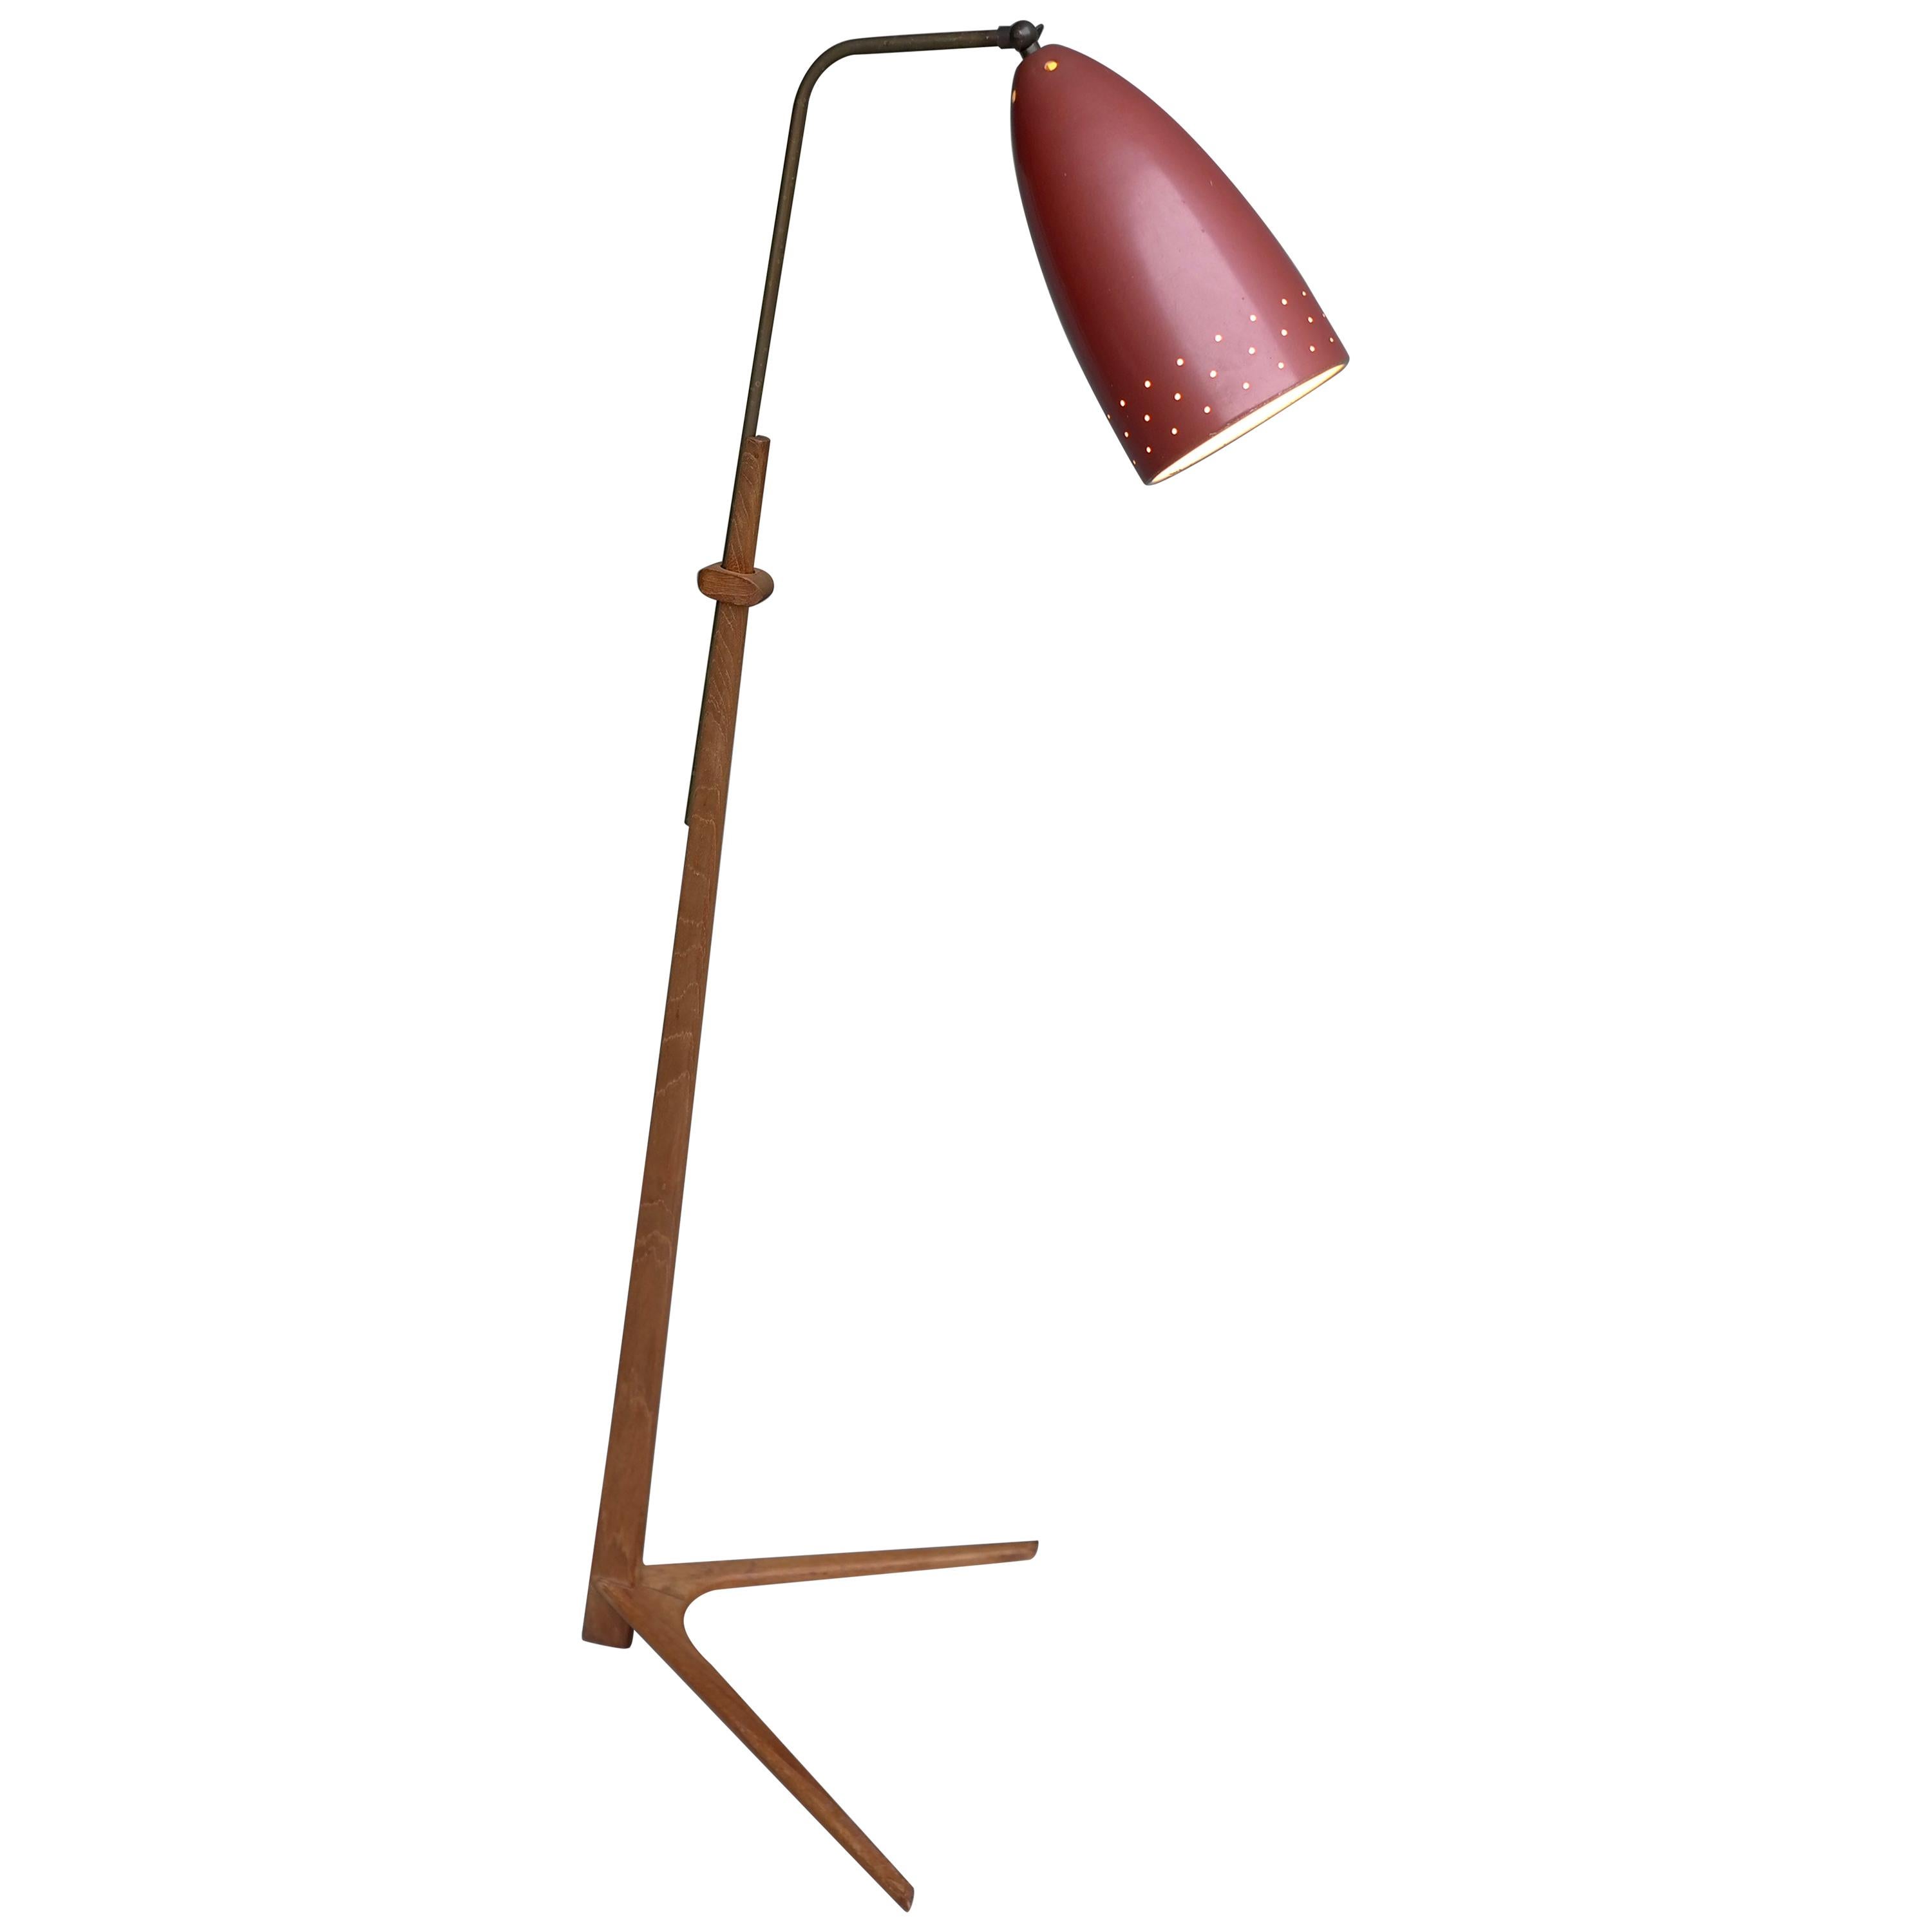 V Shaped Mid-Century Modern Danish Teak and Brass Floor Lamps, 1960s